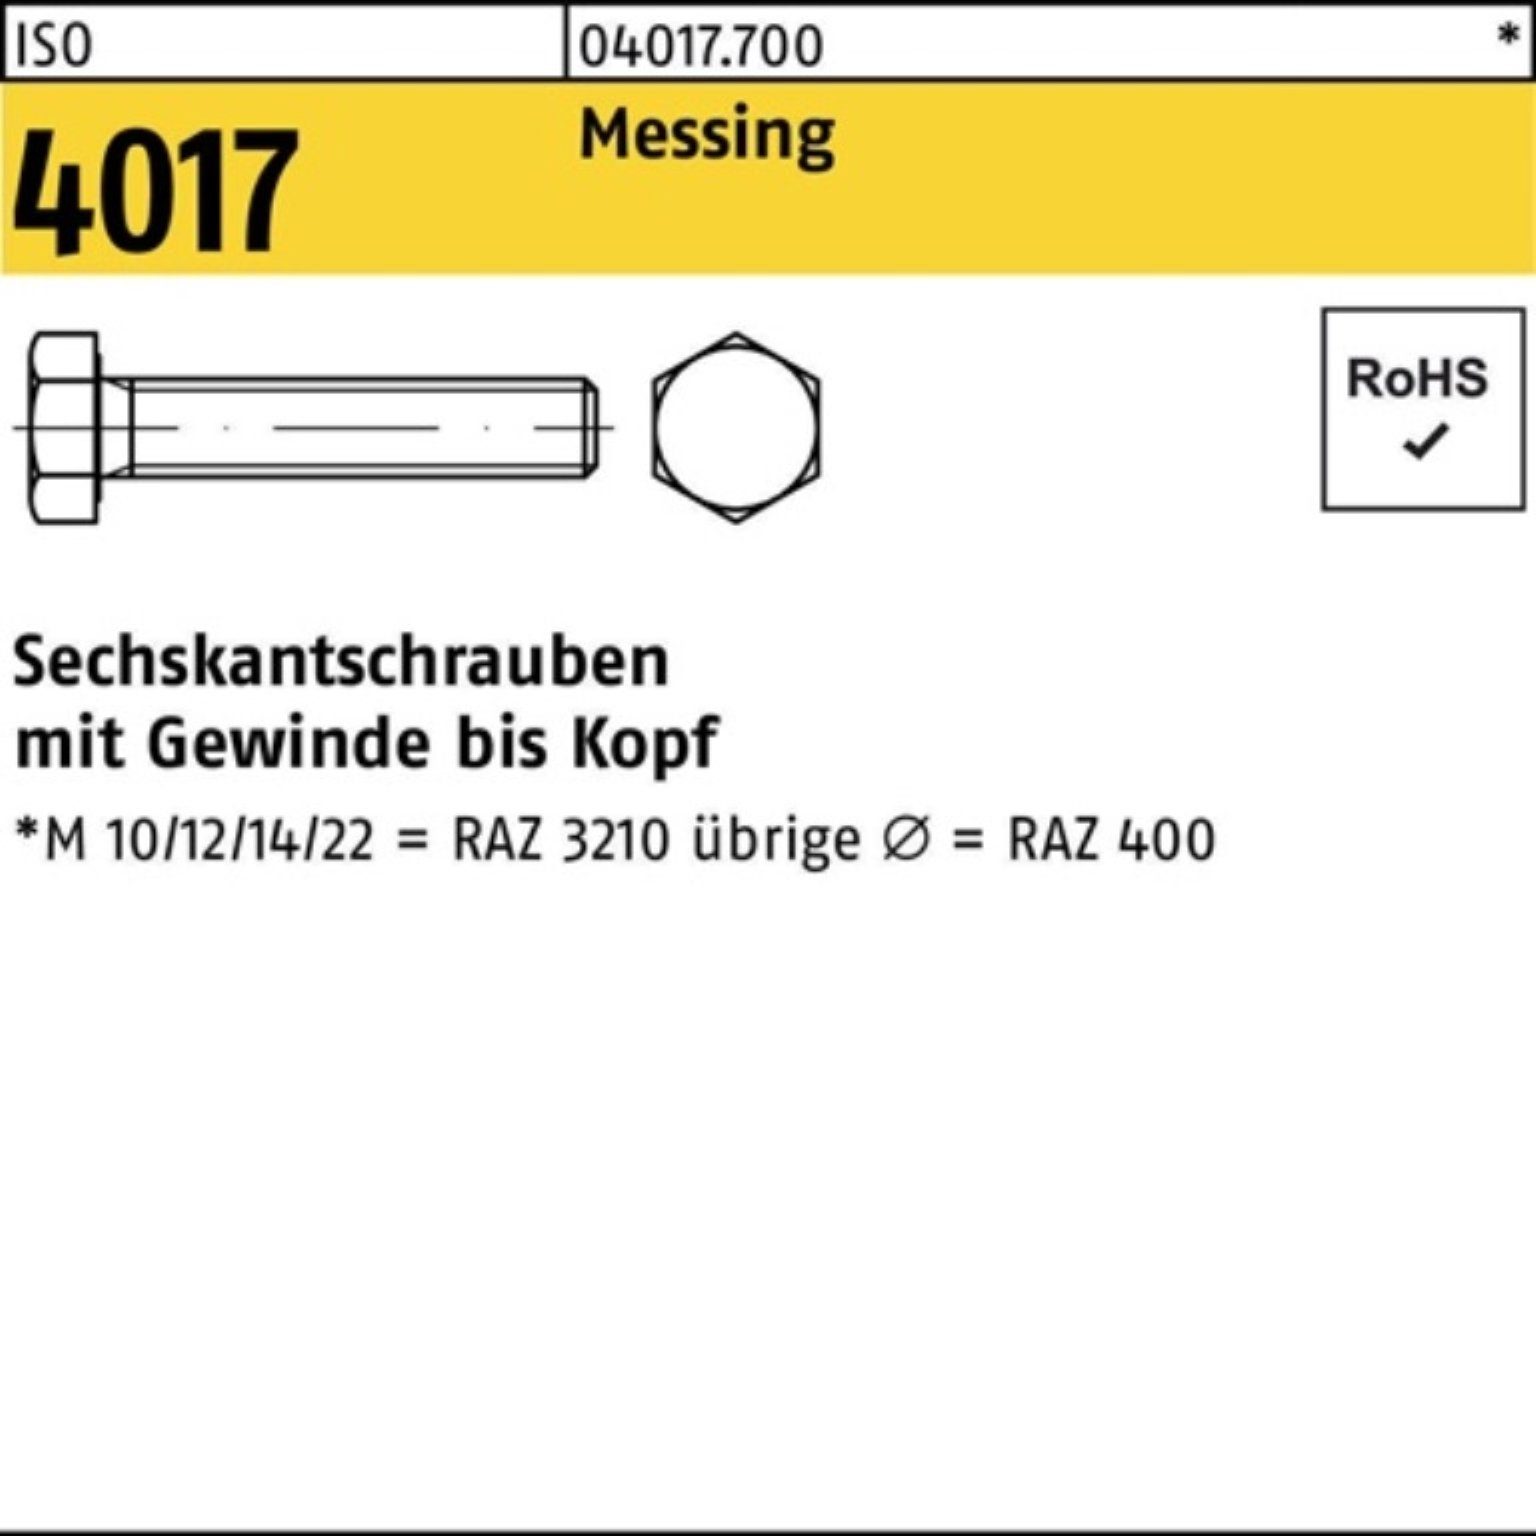 Bufab Sechskantschraube 100er ISO VG Pack 70 Stück Messing Sechskantschraube M16x ISO 4017 10